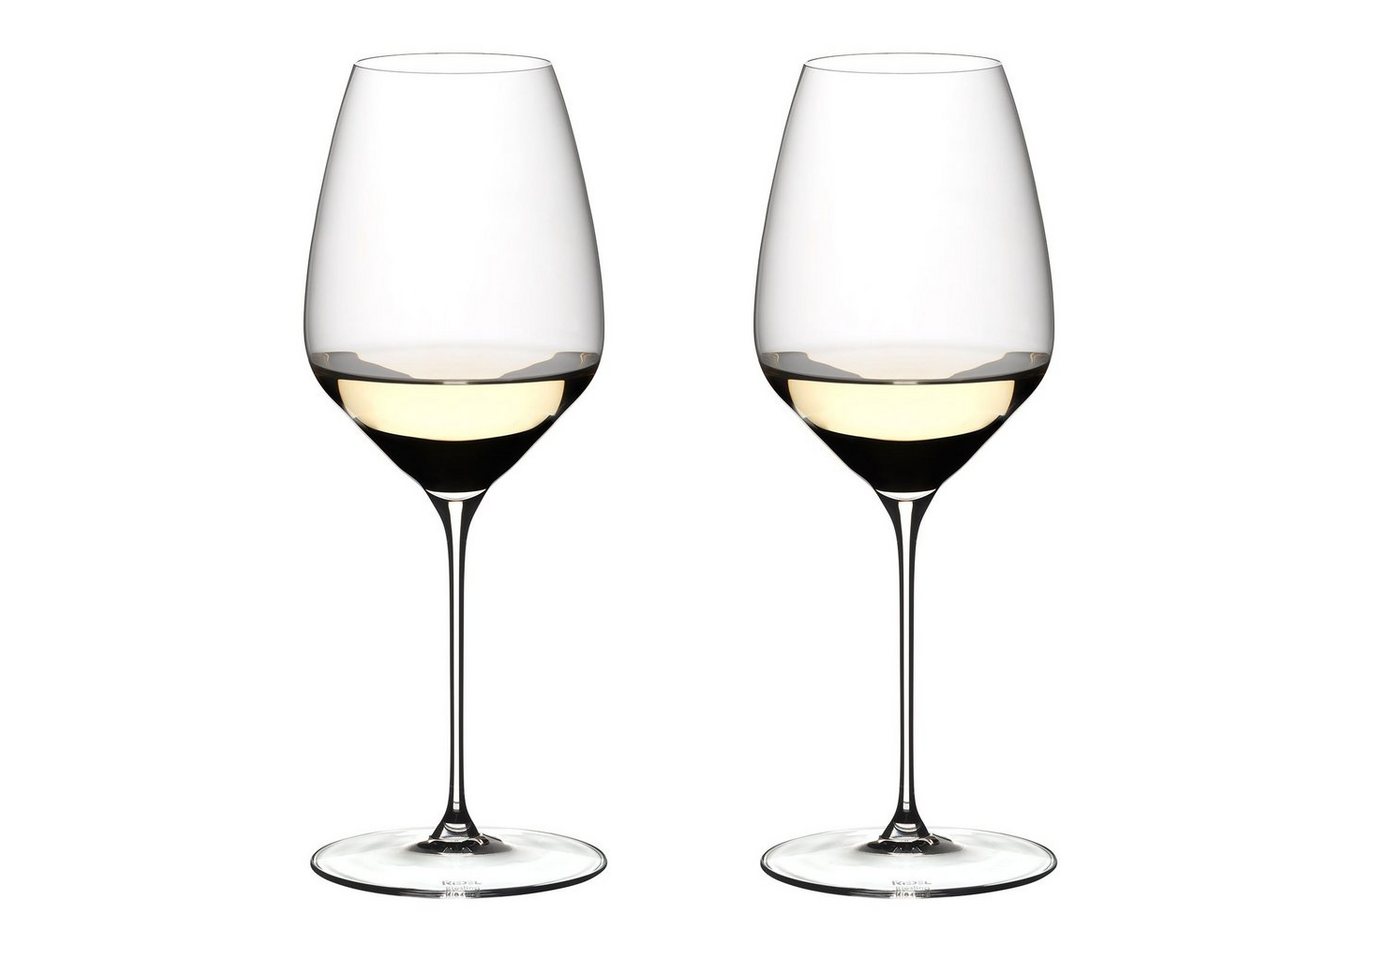 RIEDEL THE WINE GLASS COMPANY Glas von RIEDEL THE WINE GLASS COMPANY